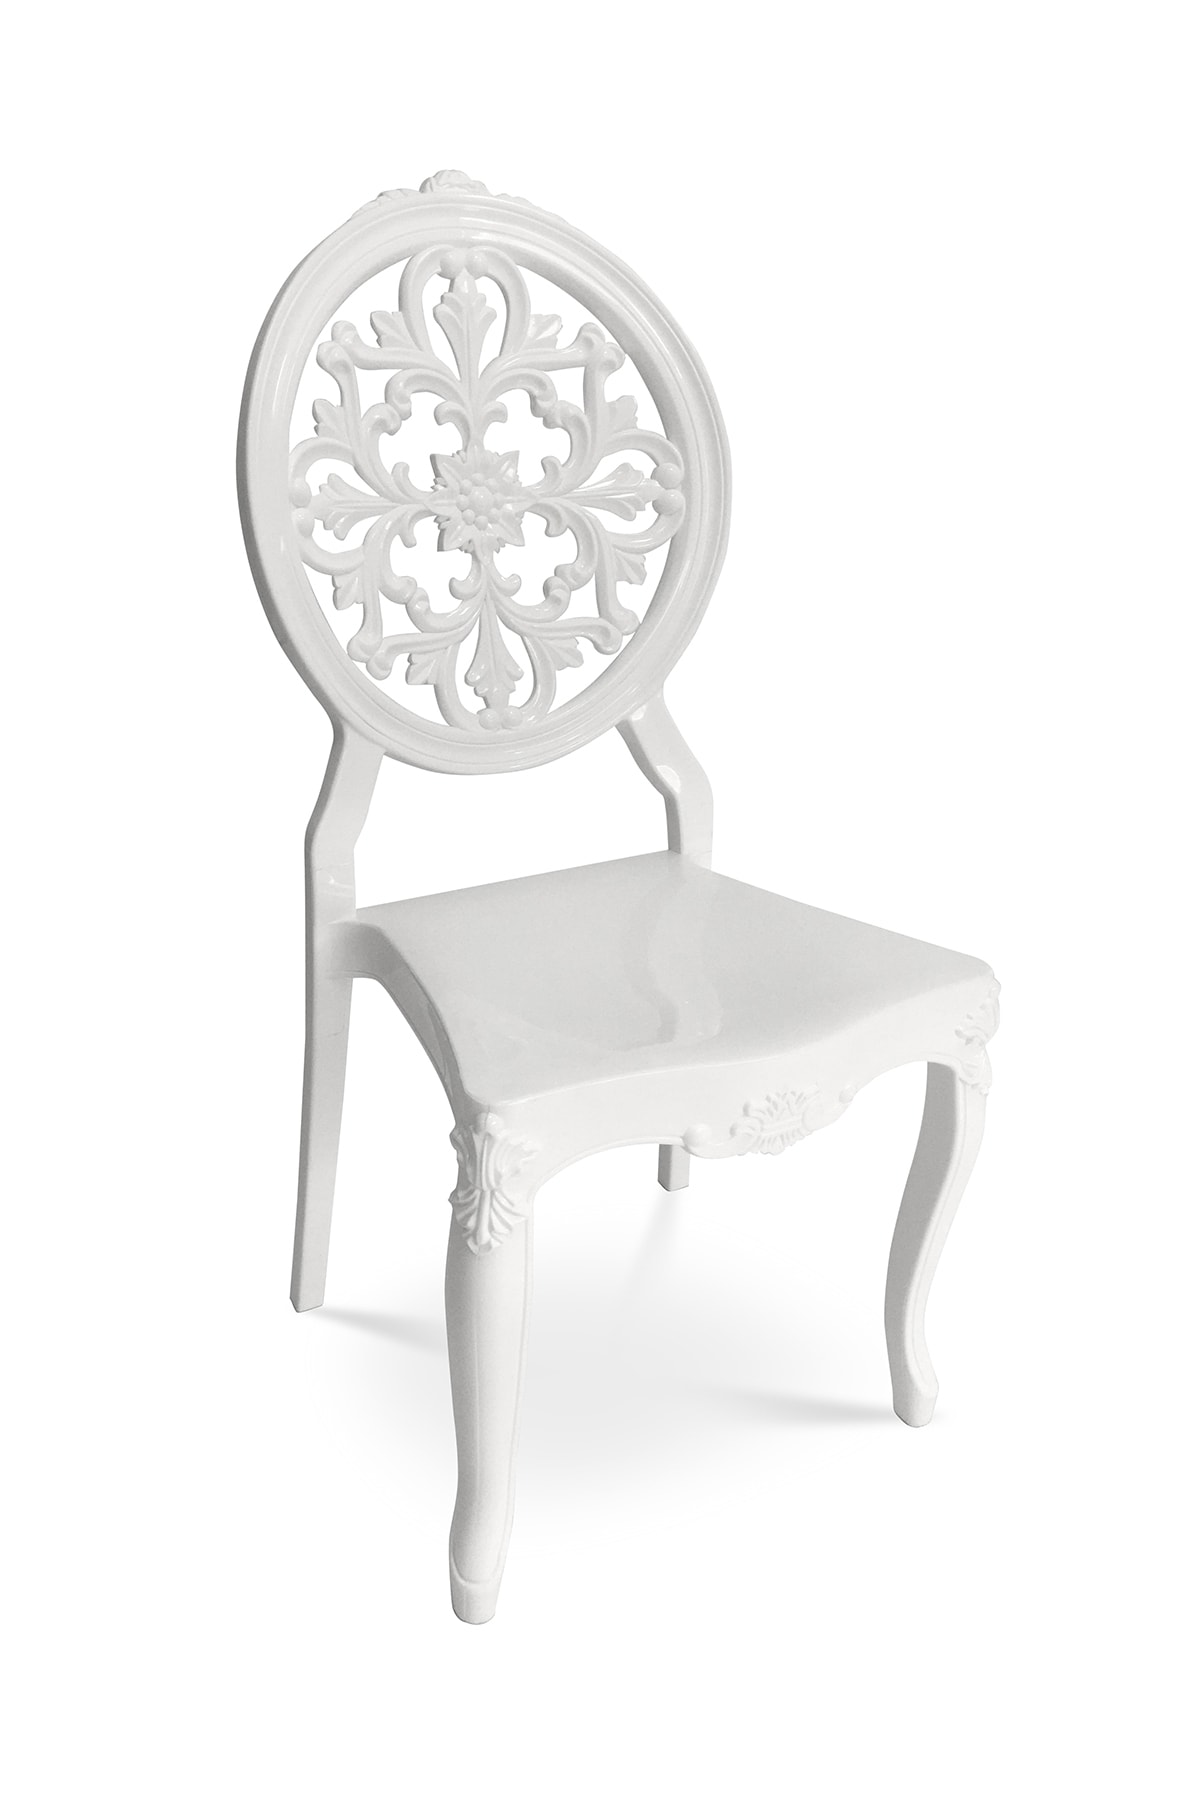 bahex Diva C - 4 Adet - Düğün Salonu Ve Organizasyon Için Iç Ve Dış Mekan Plastik Sandalye 4'lü Set